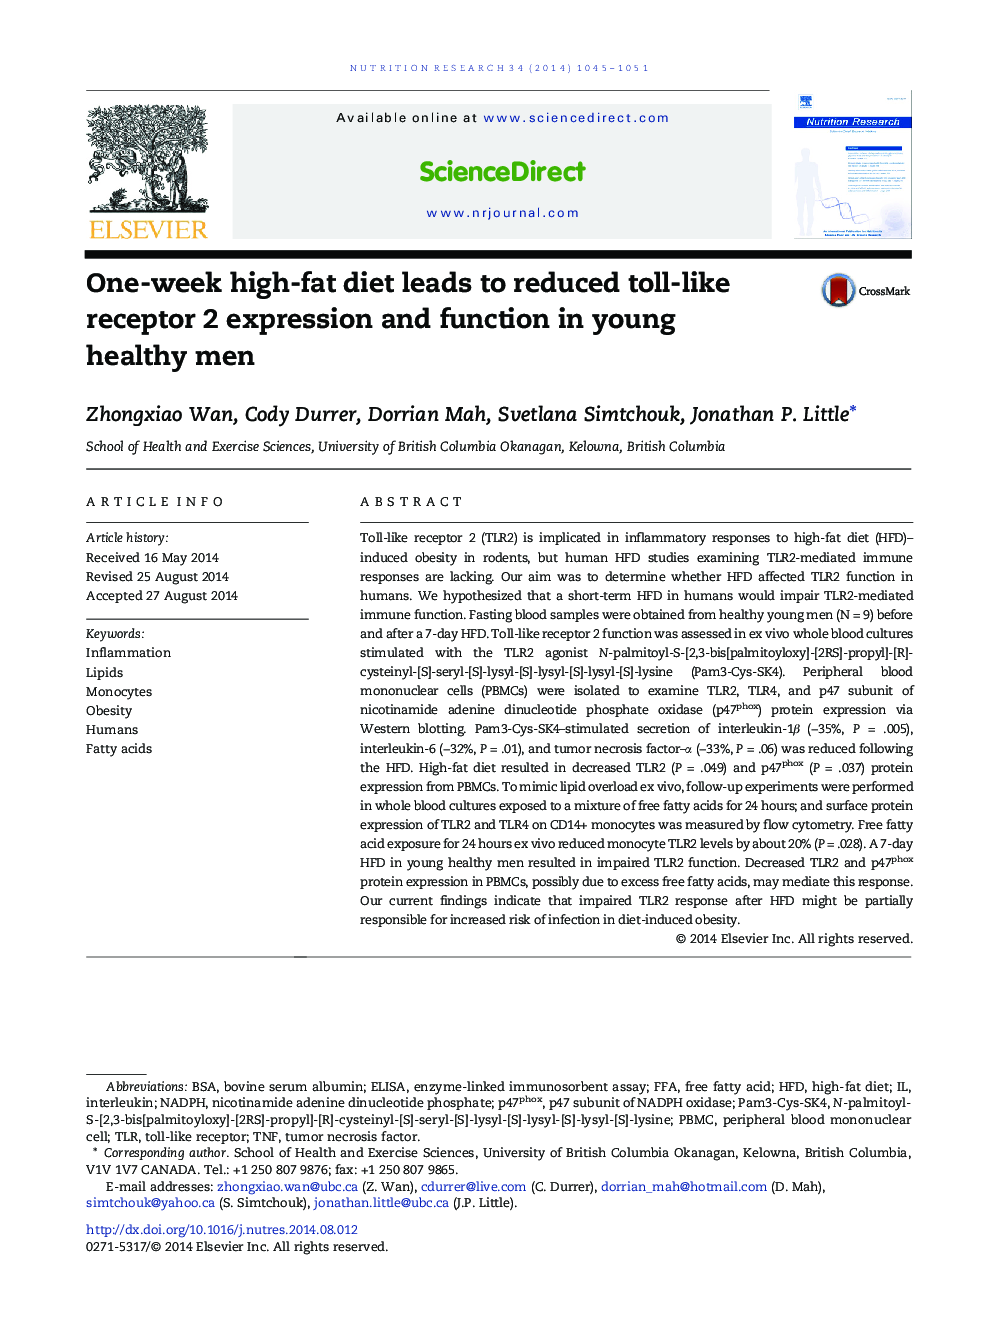 یک هفته رژیم غذایی با چربی بالا موجب کاهش بیان و عملکرد گیرنده 2 مانند قرصهای سالم در مردان جوان سالم می شود 